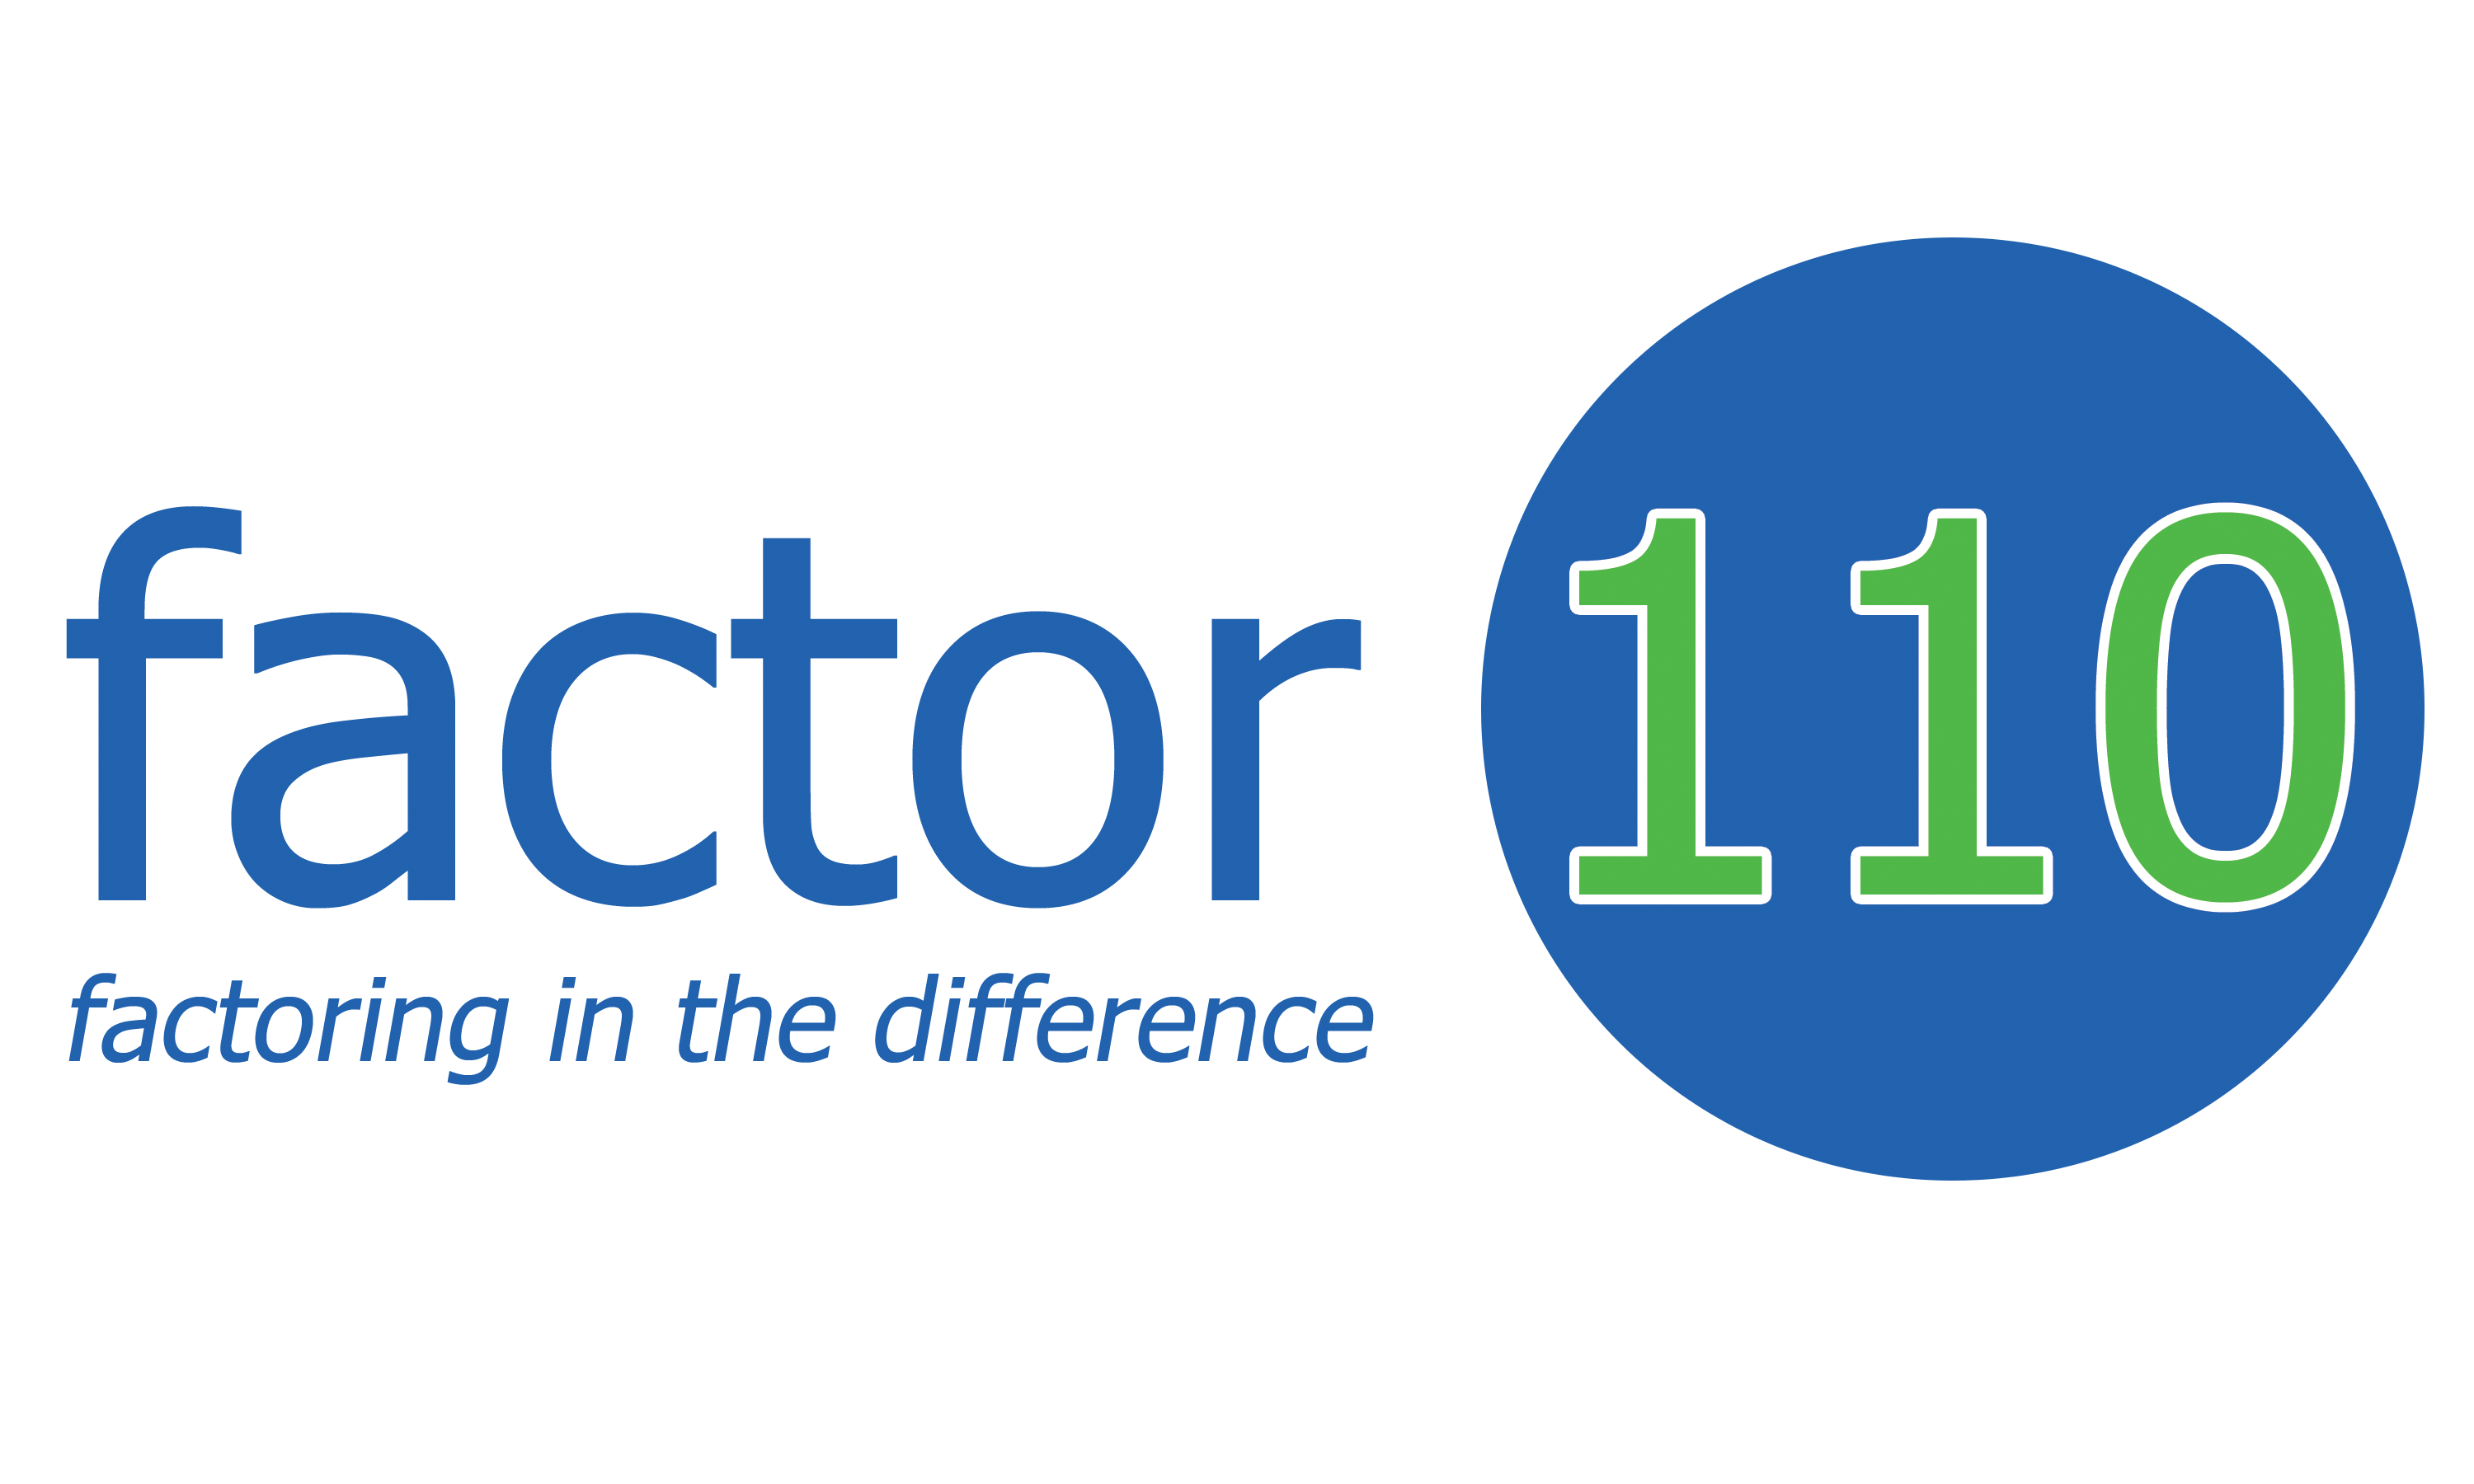 factor 110 logo